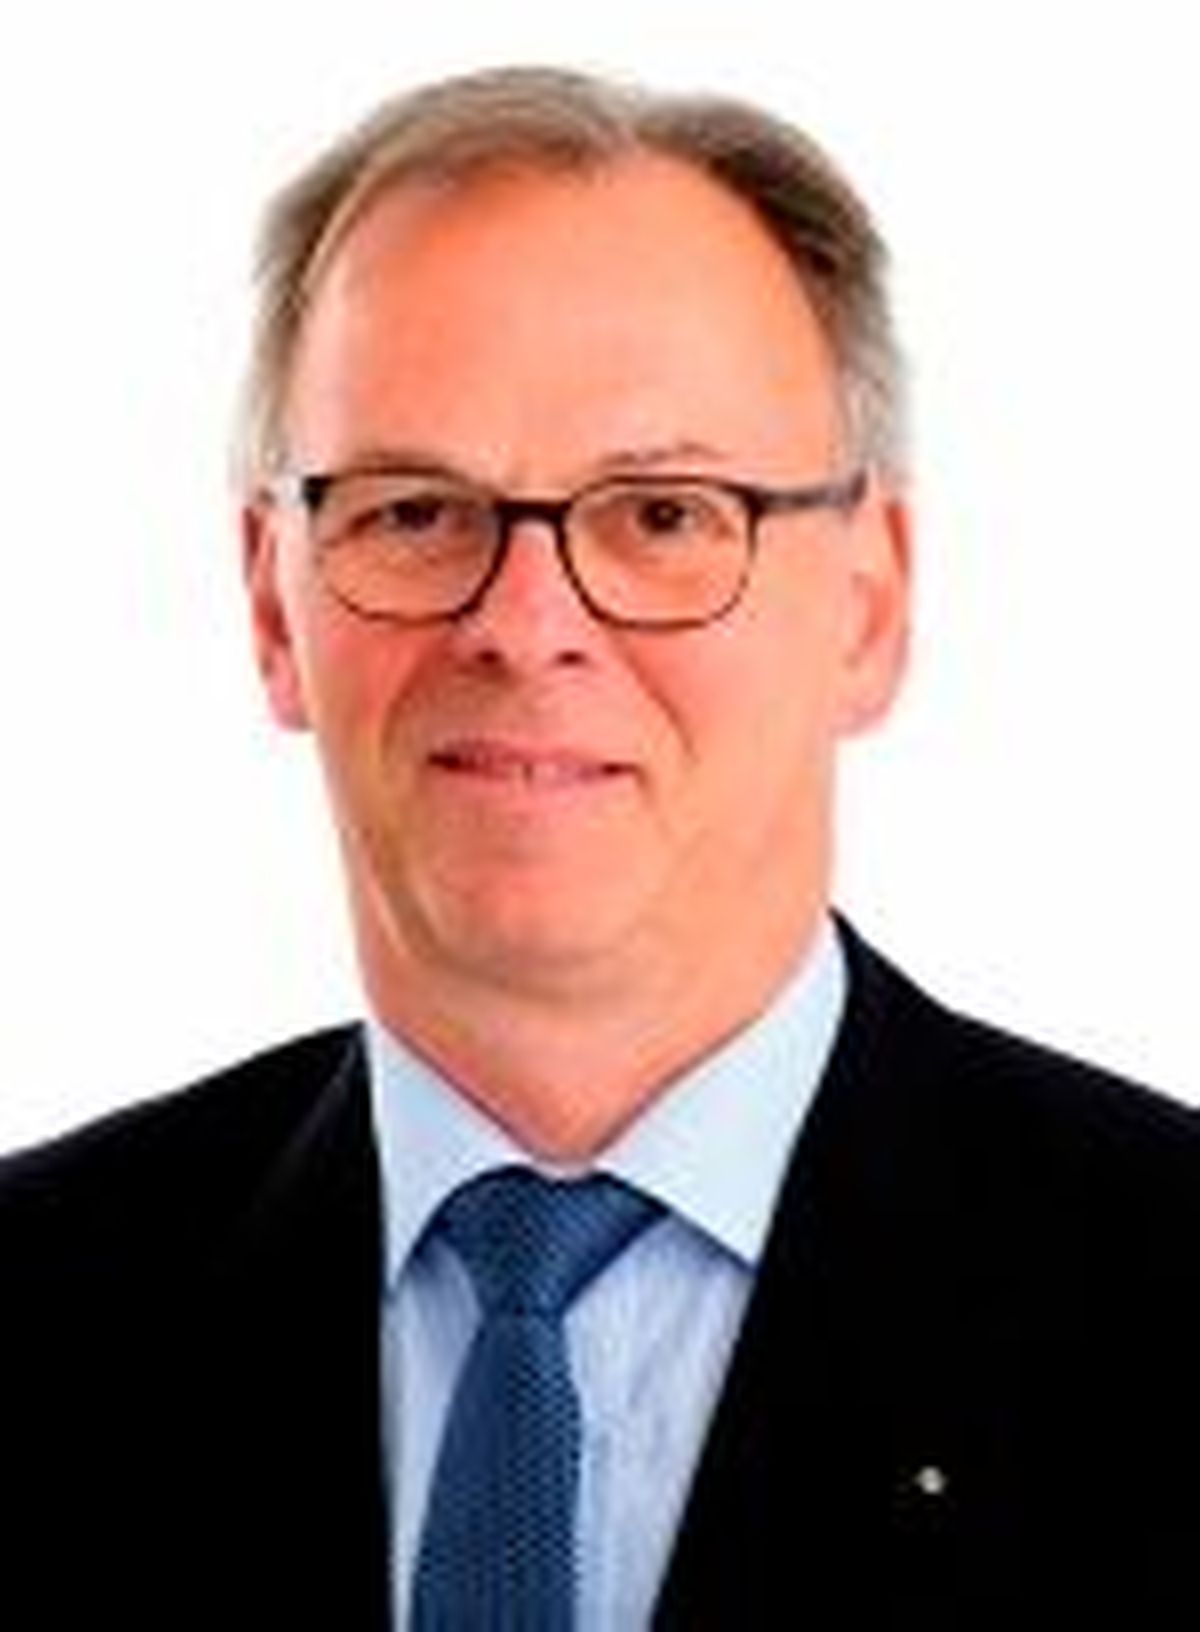 Ralph Leibecke ist Fachanwalt für Medizinrecht und Strafrecht bei Vesting & Partner in Göttingen